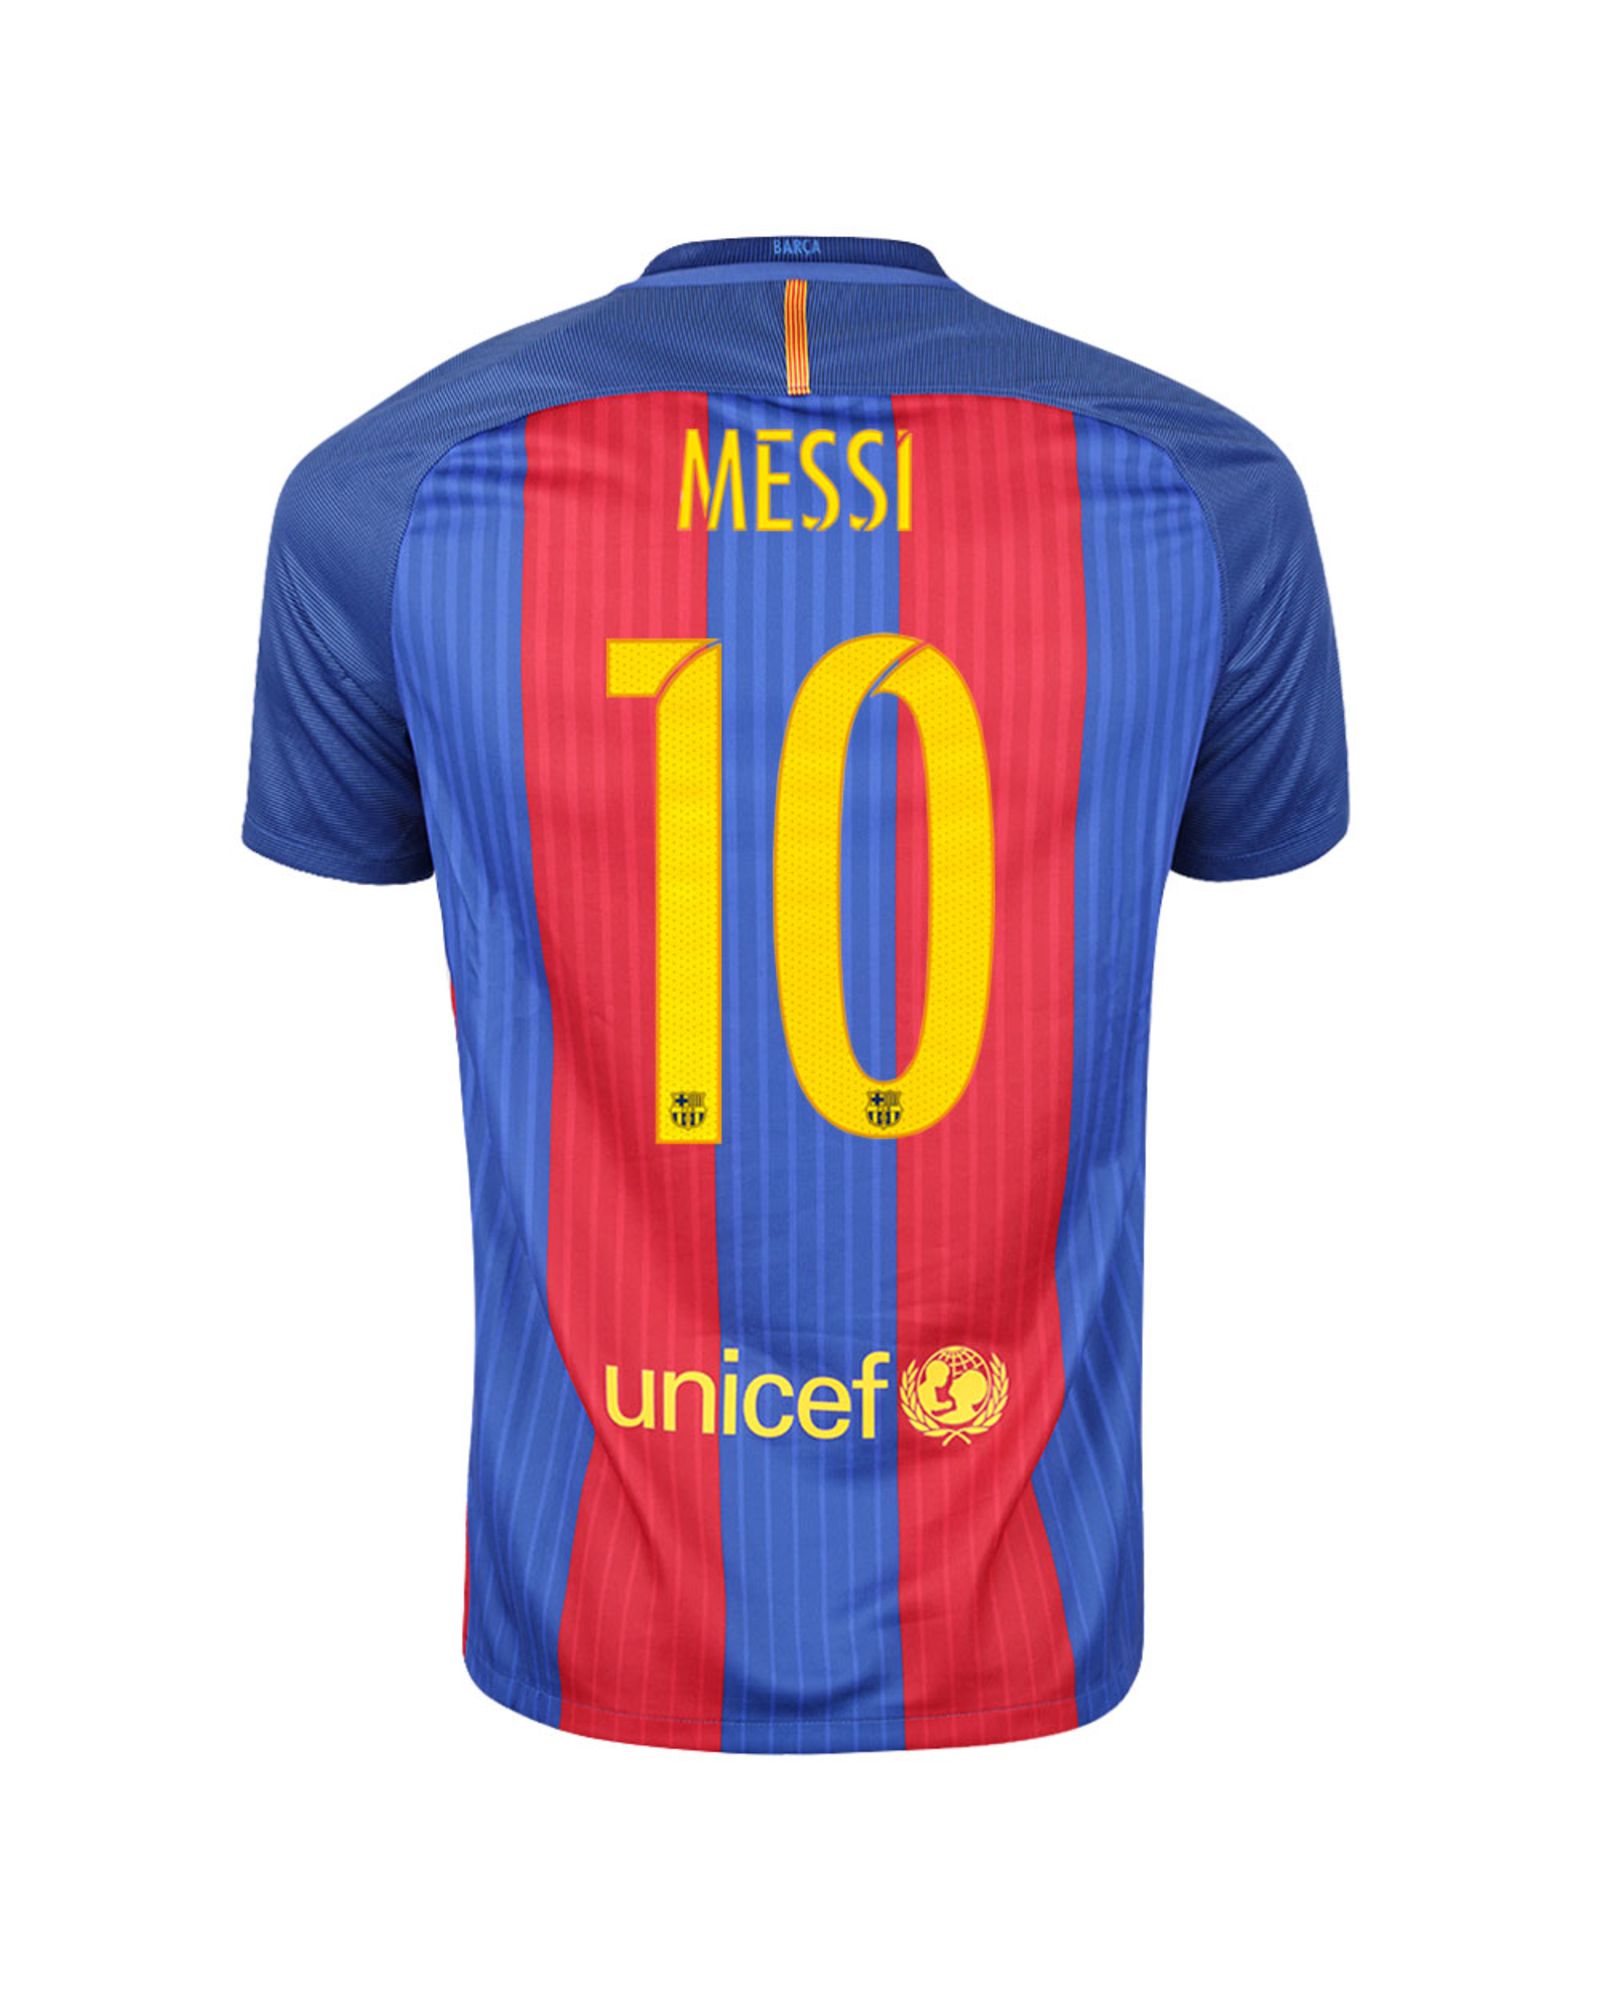 siga adelante Atrás, atrás, atrás parte cáncer Camiseta 1ª FC Barcelona 2016/2017 Messi Stadium